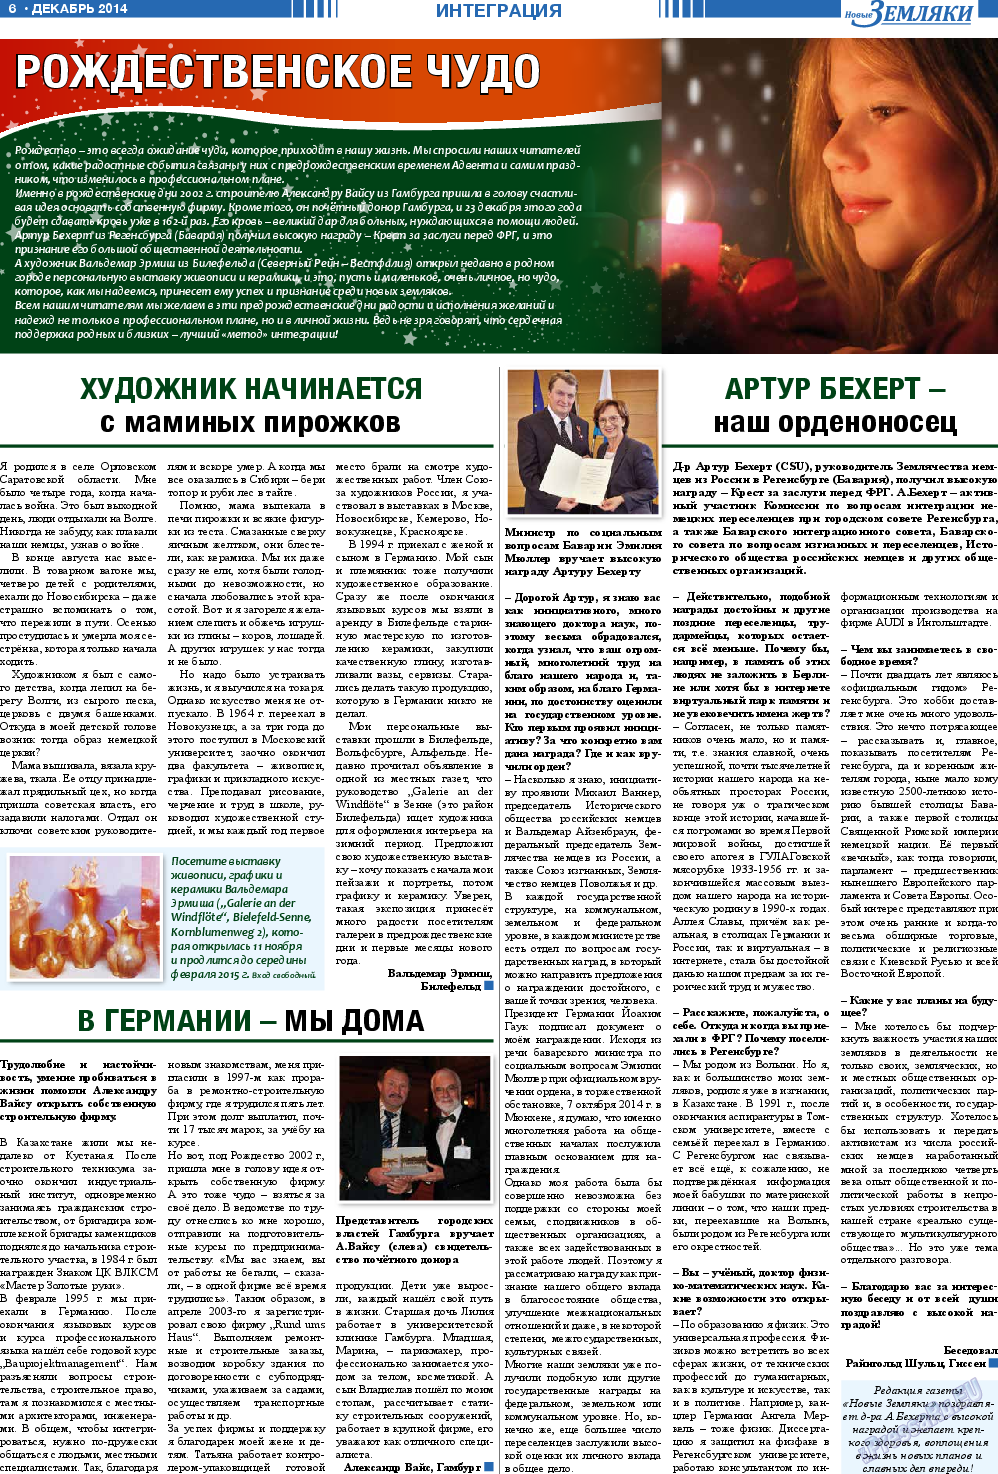 Новые Земляки, газета. 2014 №12 стр.6